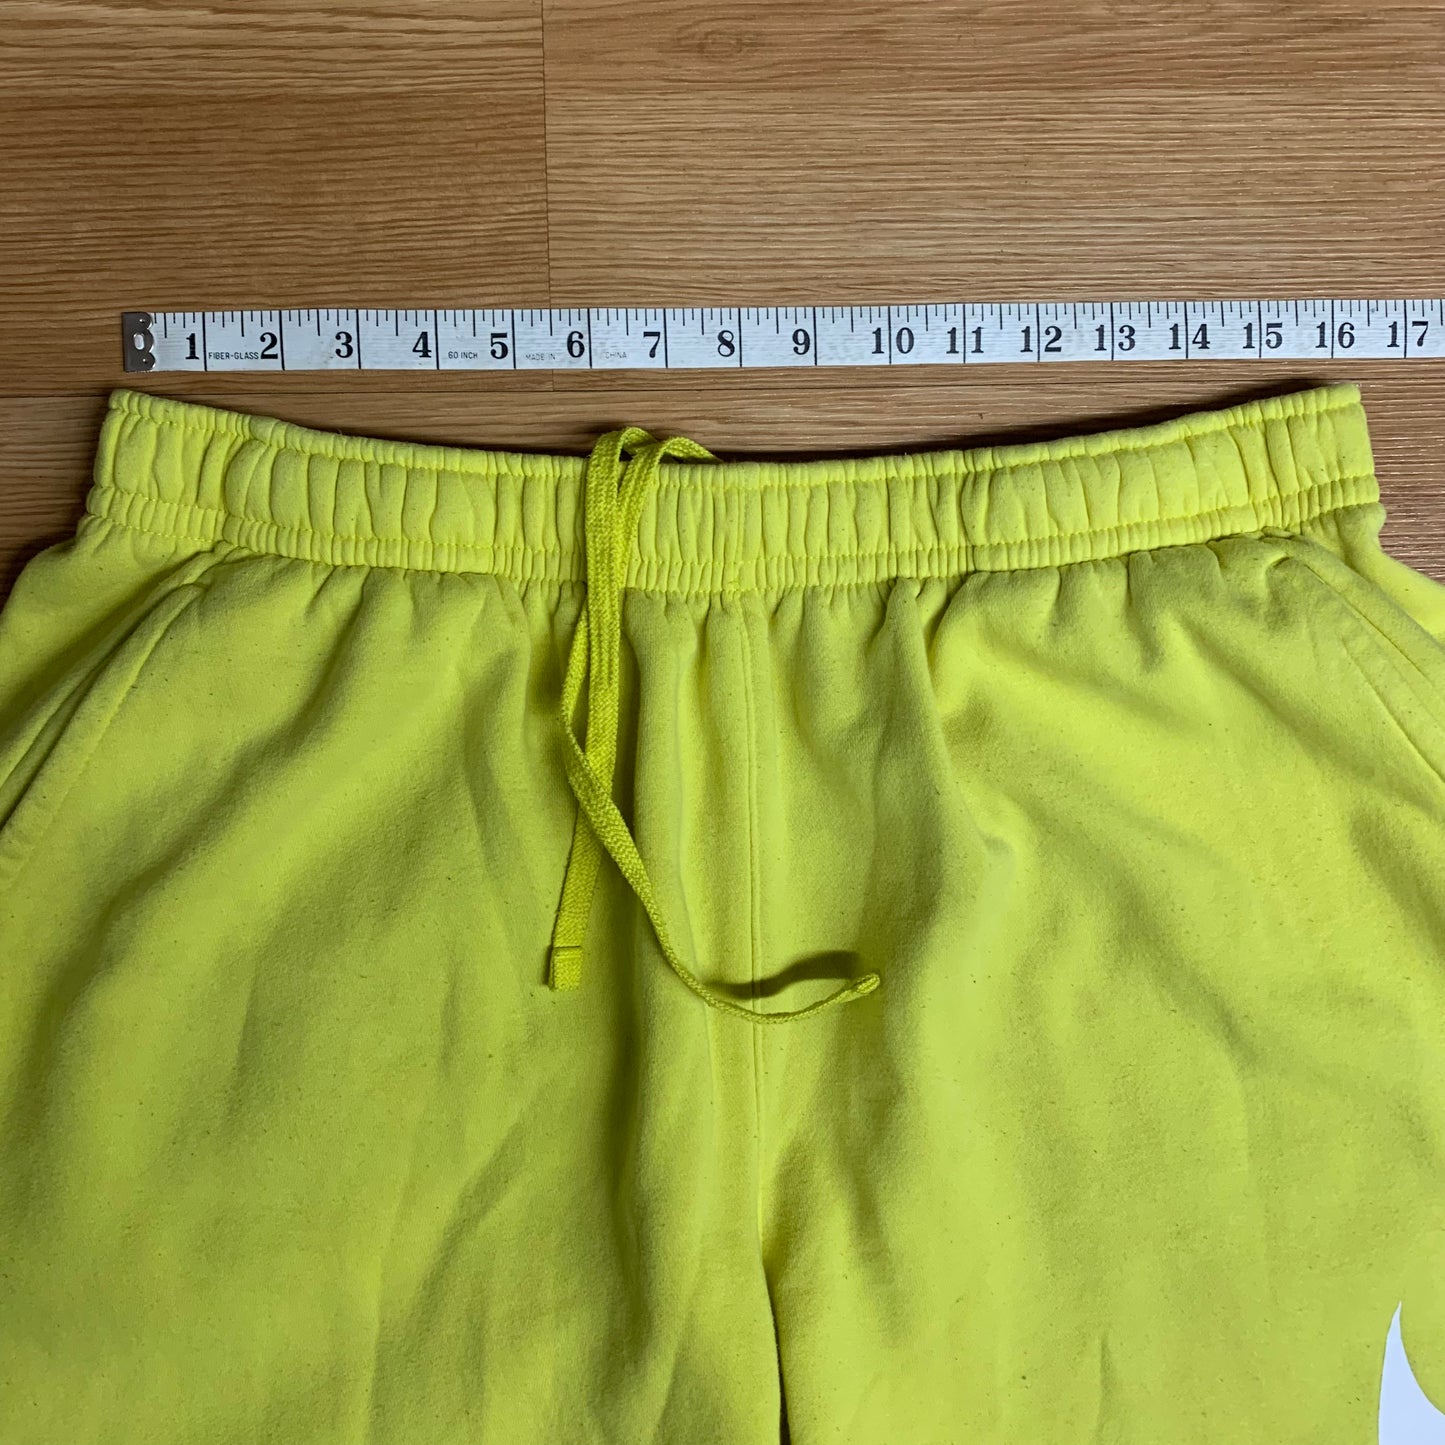 Nike Sweat Shorts Yellow 2XL